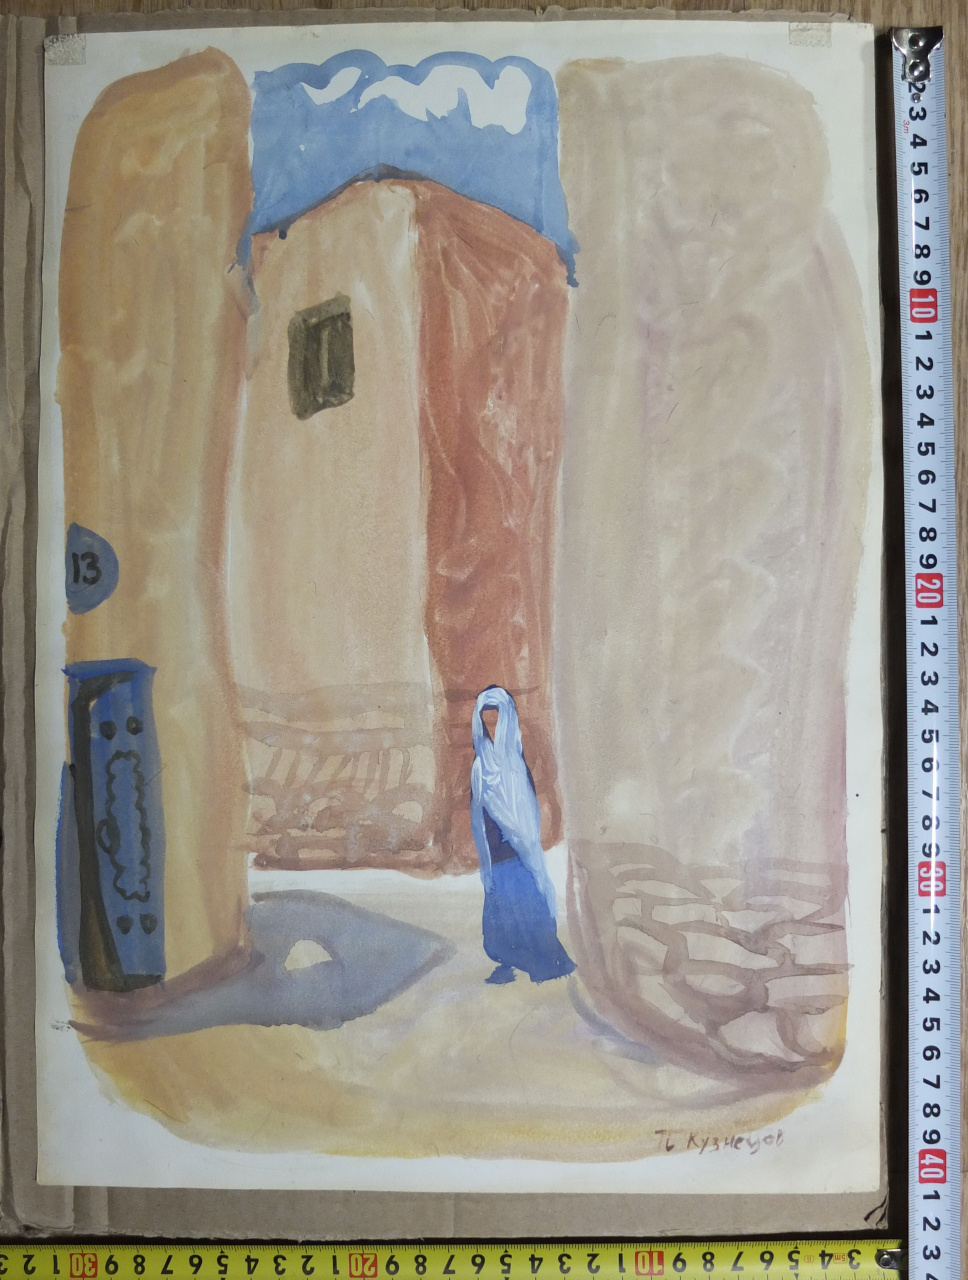  акварель Восточная Девушка, акварель, художник Павел Кузнецов, начало  20го века, царская